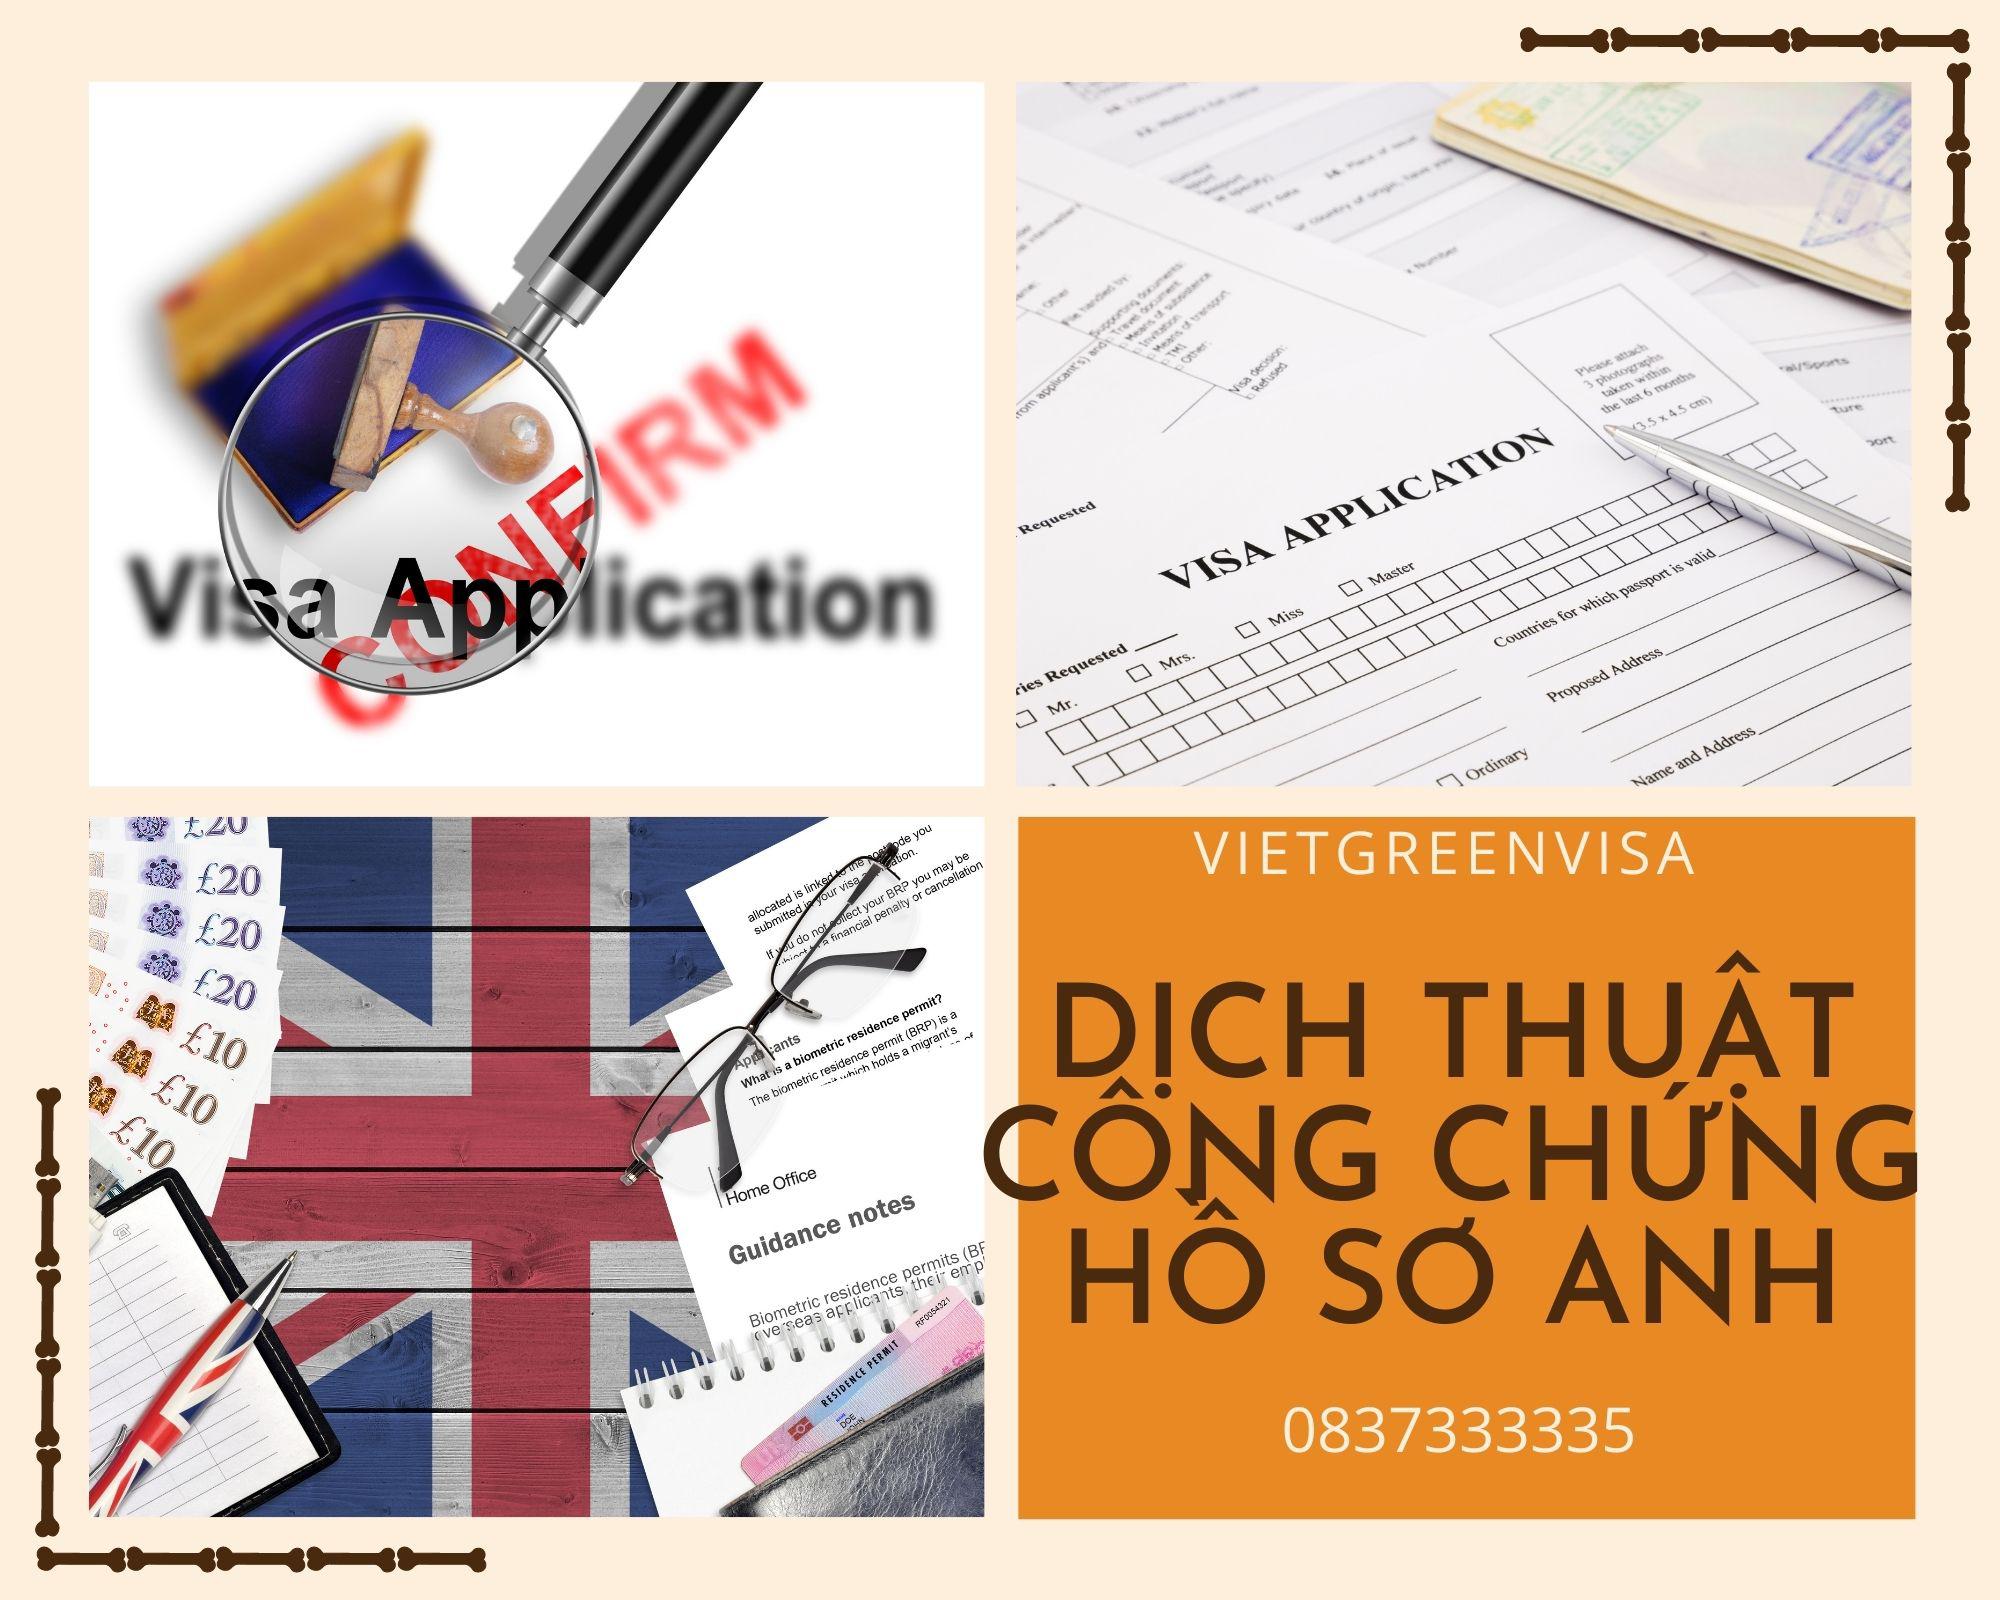 Tư vấn dịch thuật công chứng hồ sơ visa đi Anh nhanh gọn